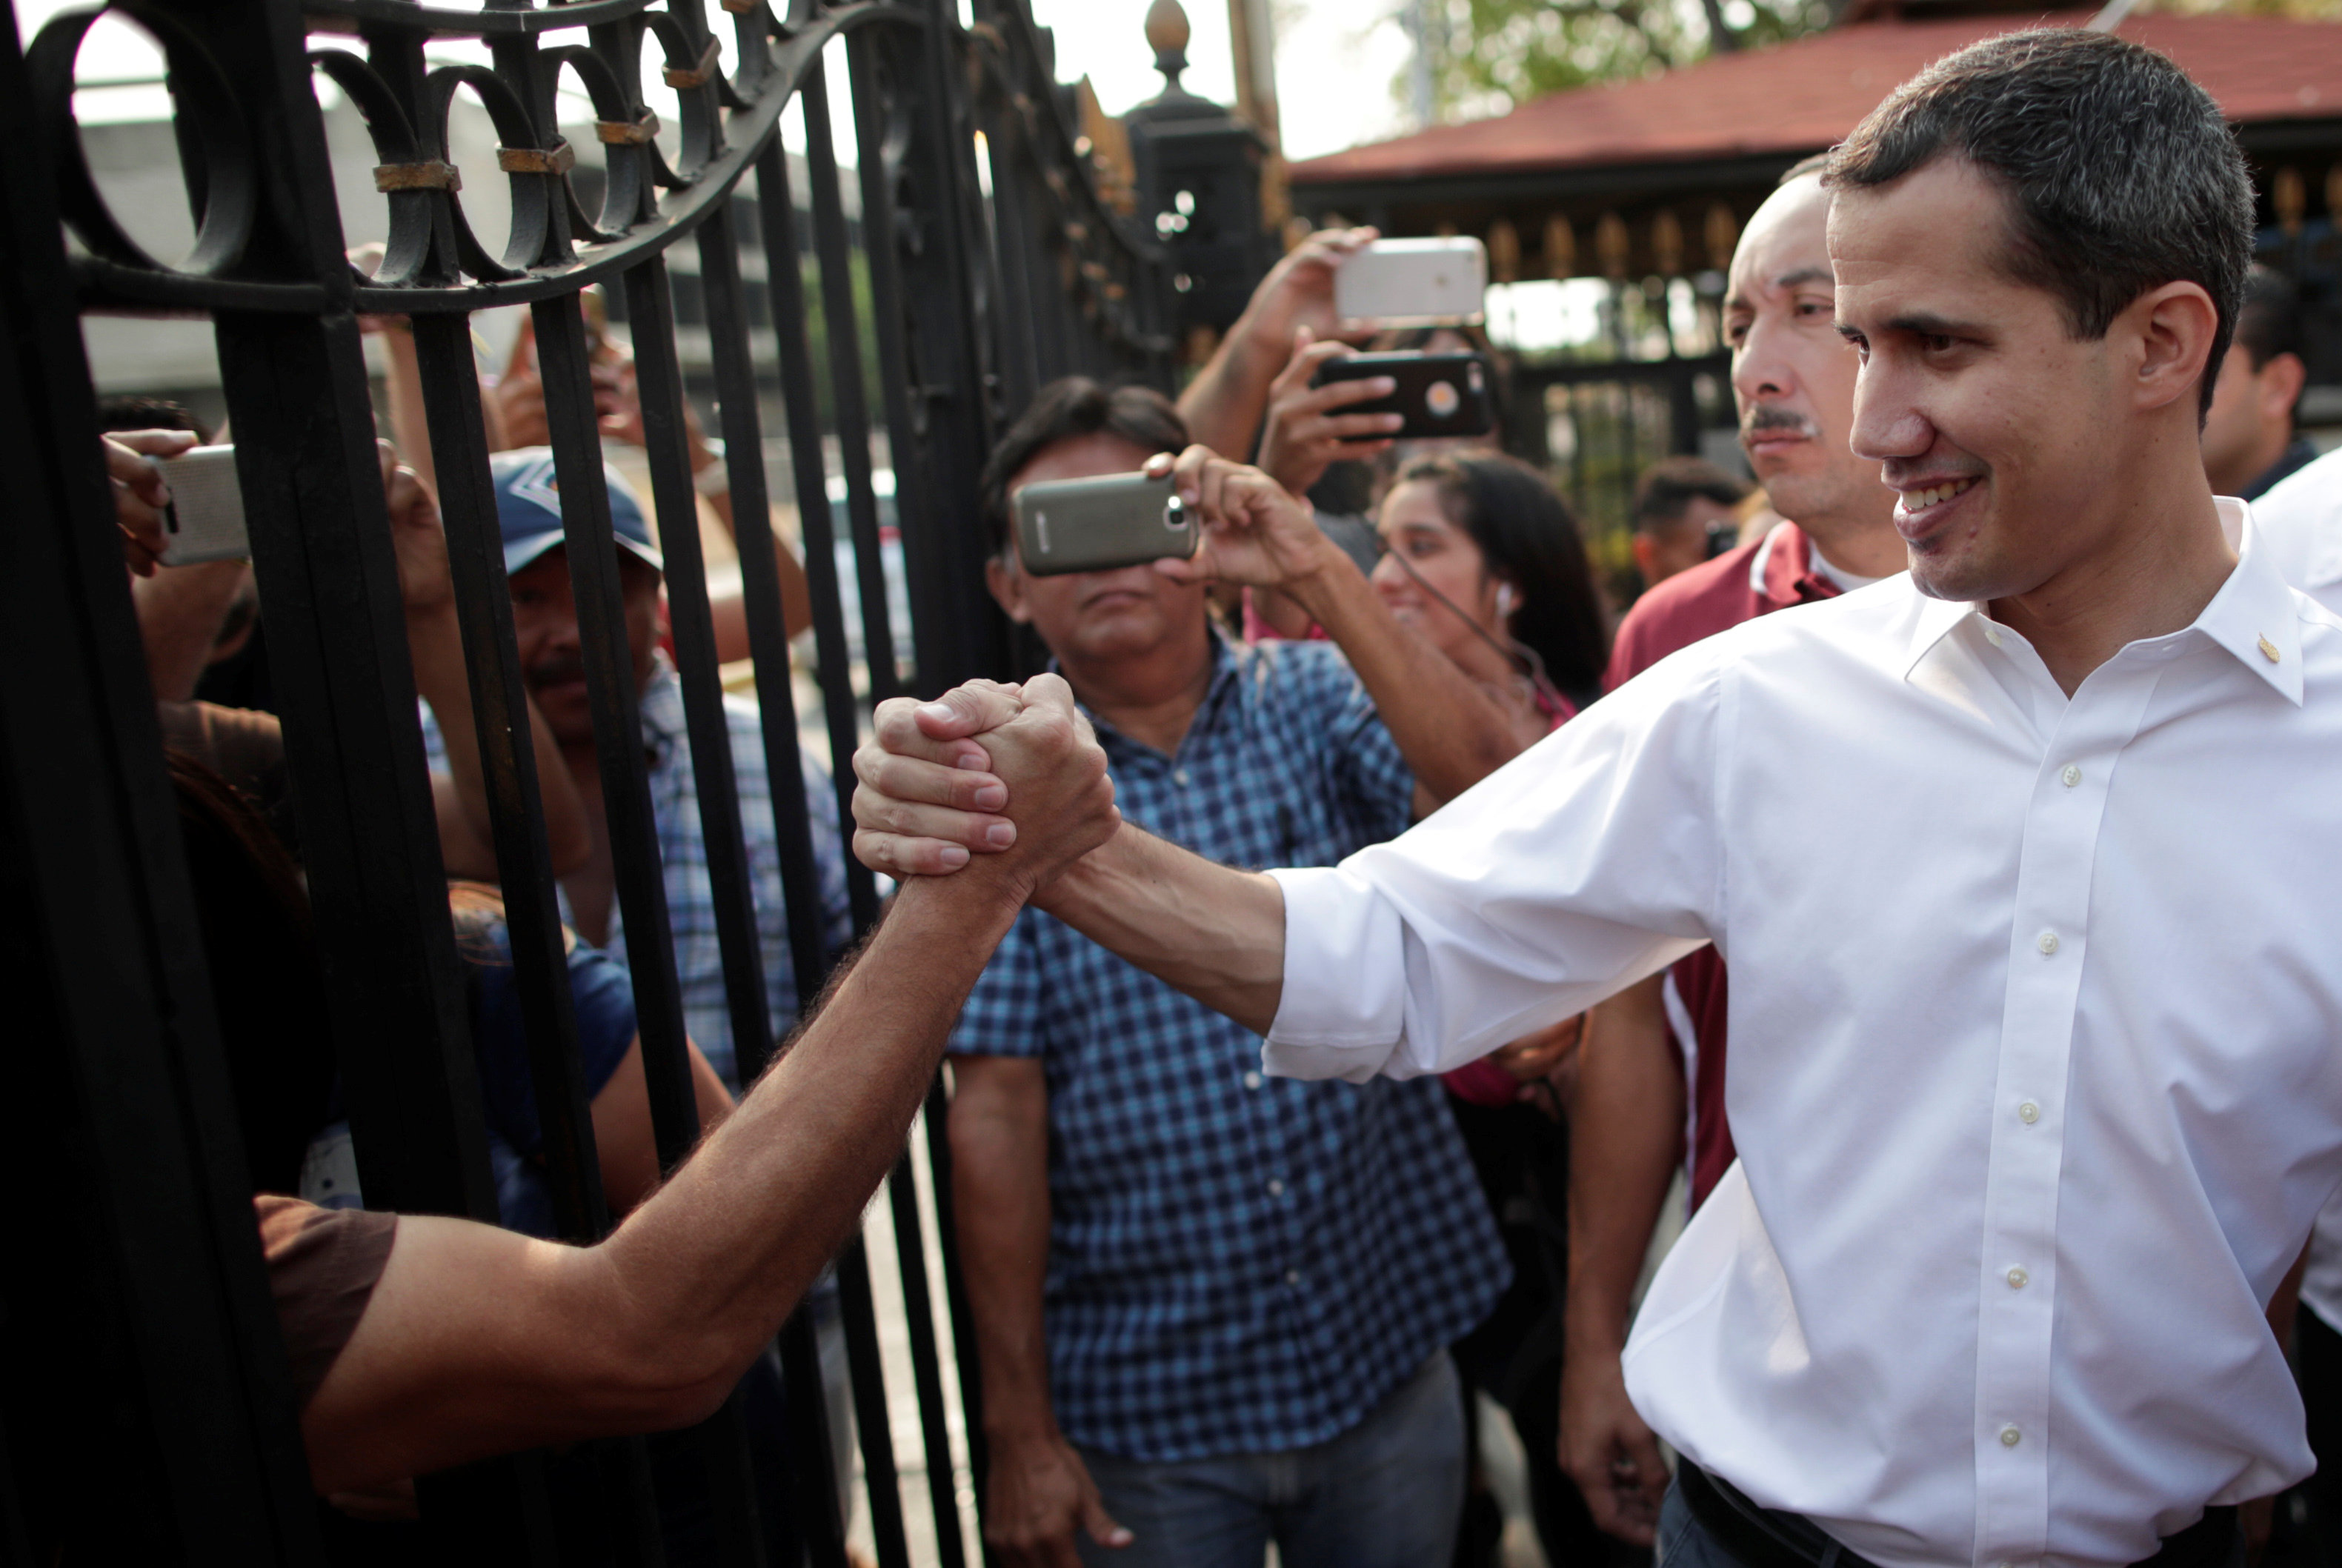 El VIDEO que demuestra el carisma y liderazgo popular de Guaidó en su visita a Zulia